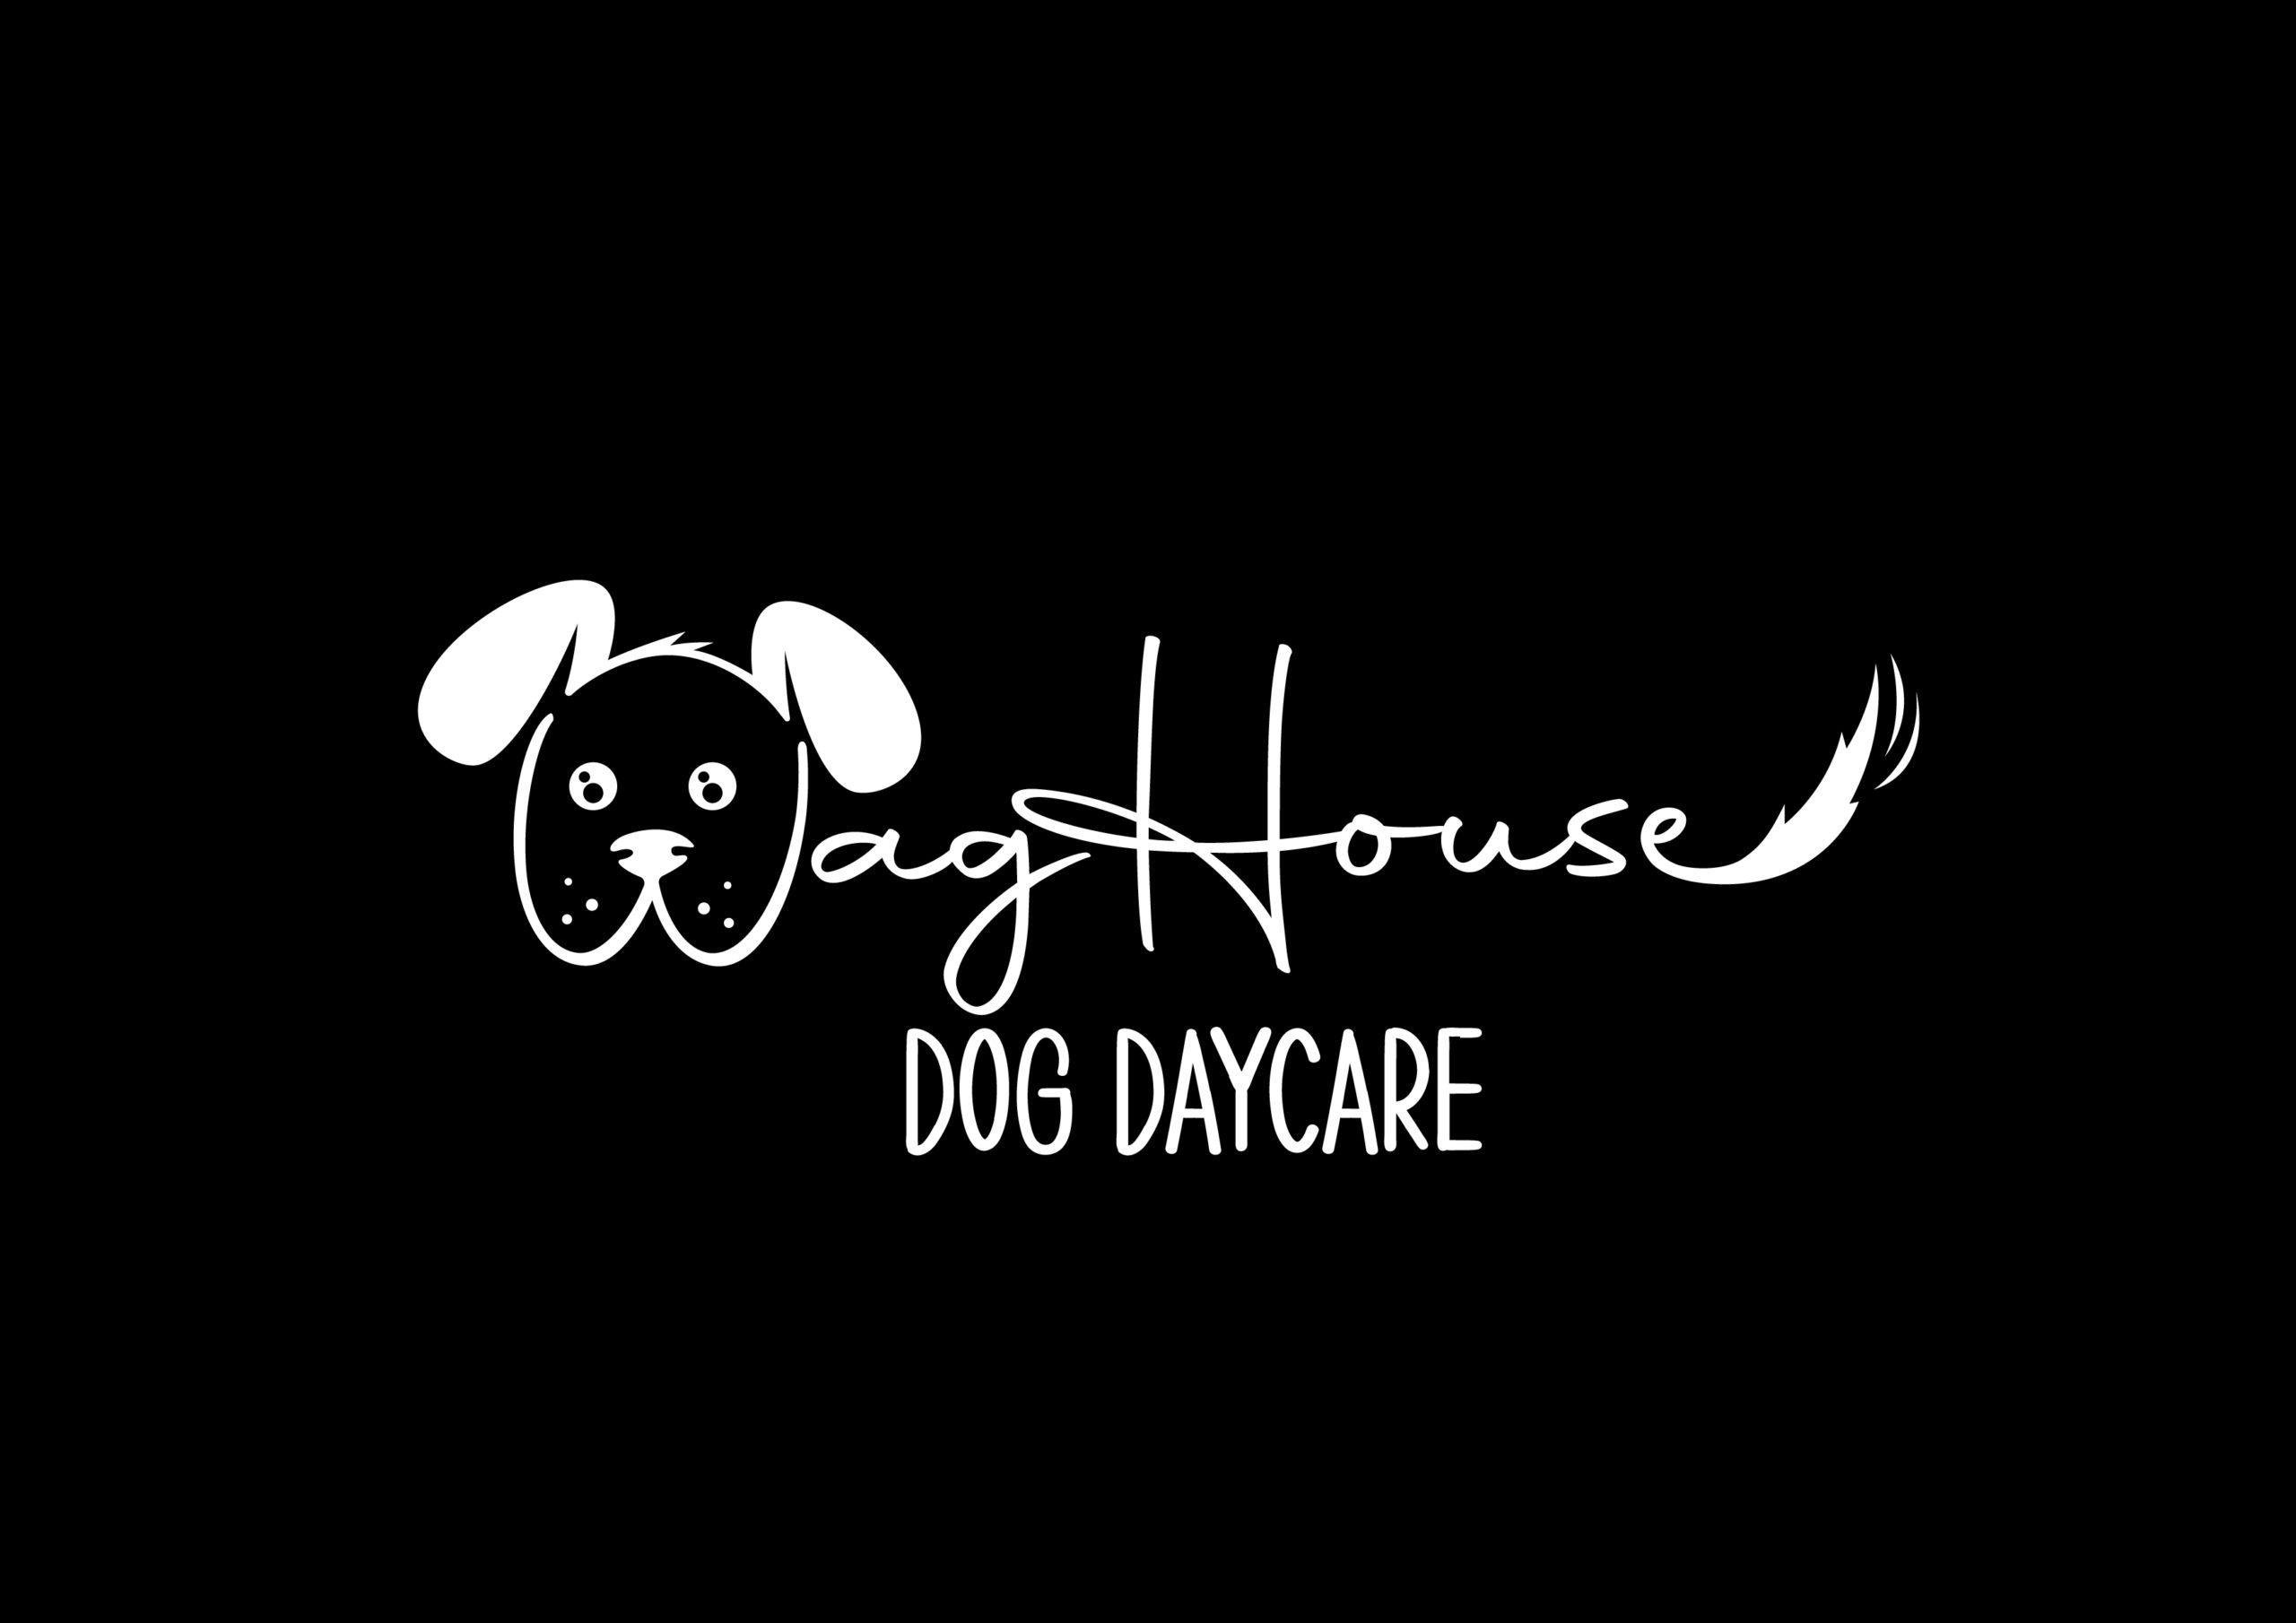 Waghouse Dog DaycareWH